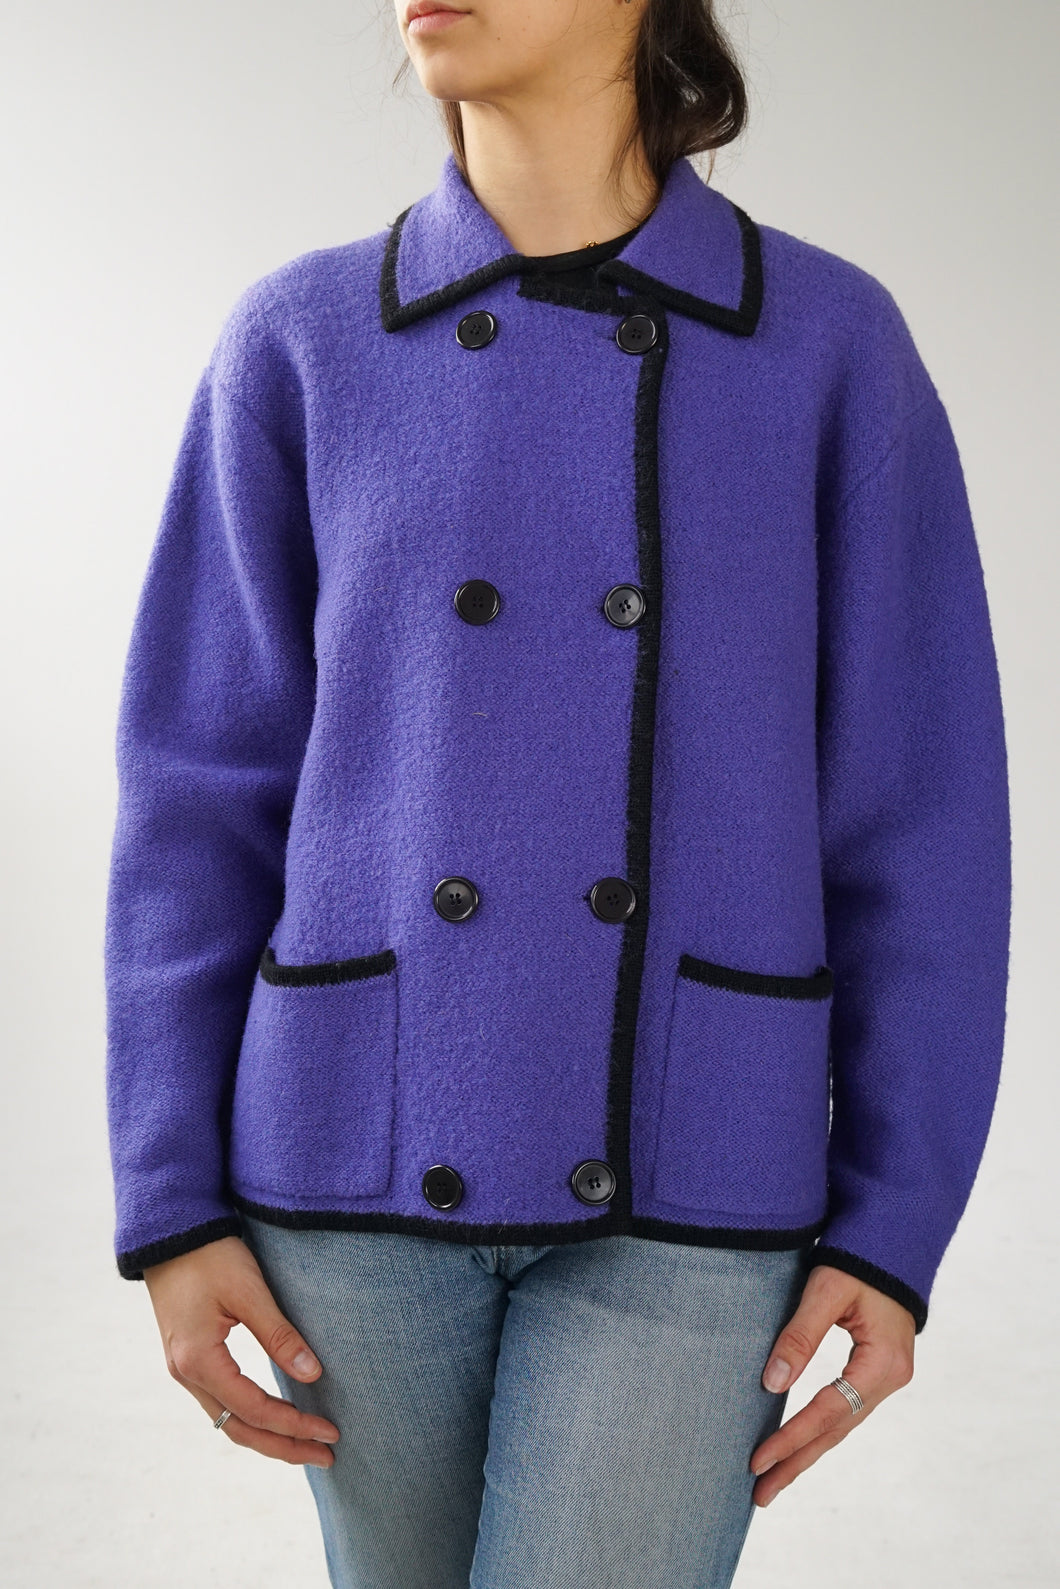 Wondra Wool veste tricot en laine a bouton style chanel bleu royal M